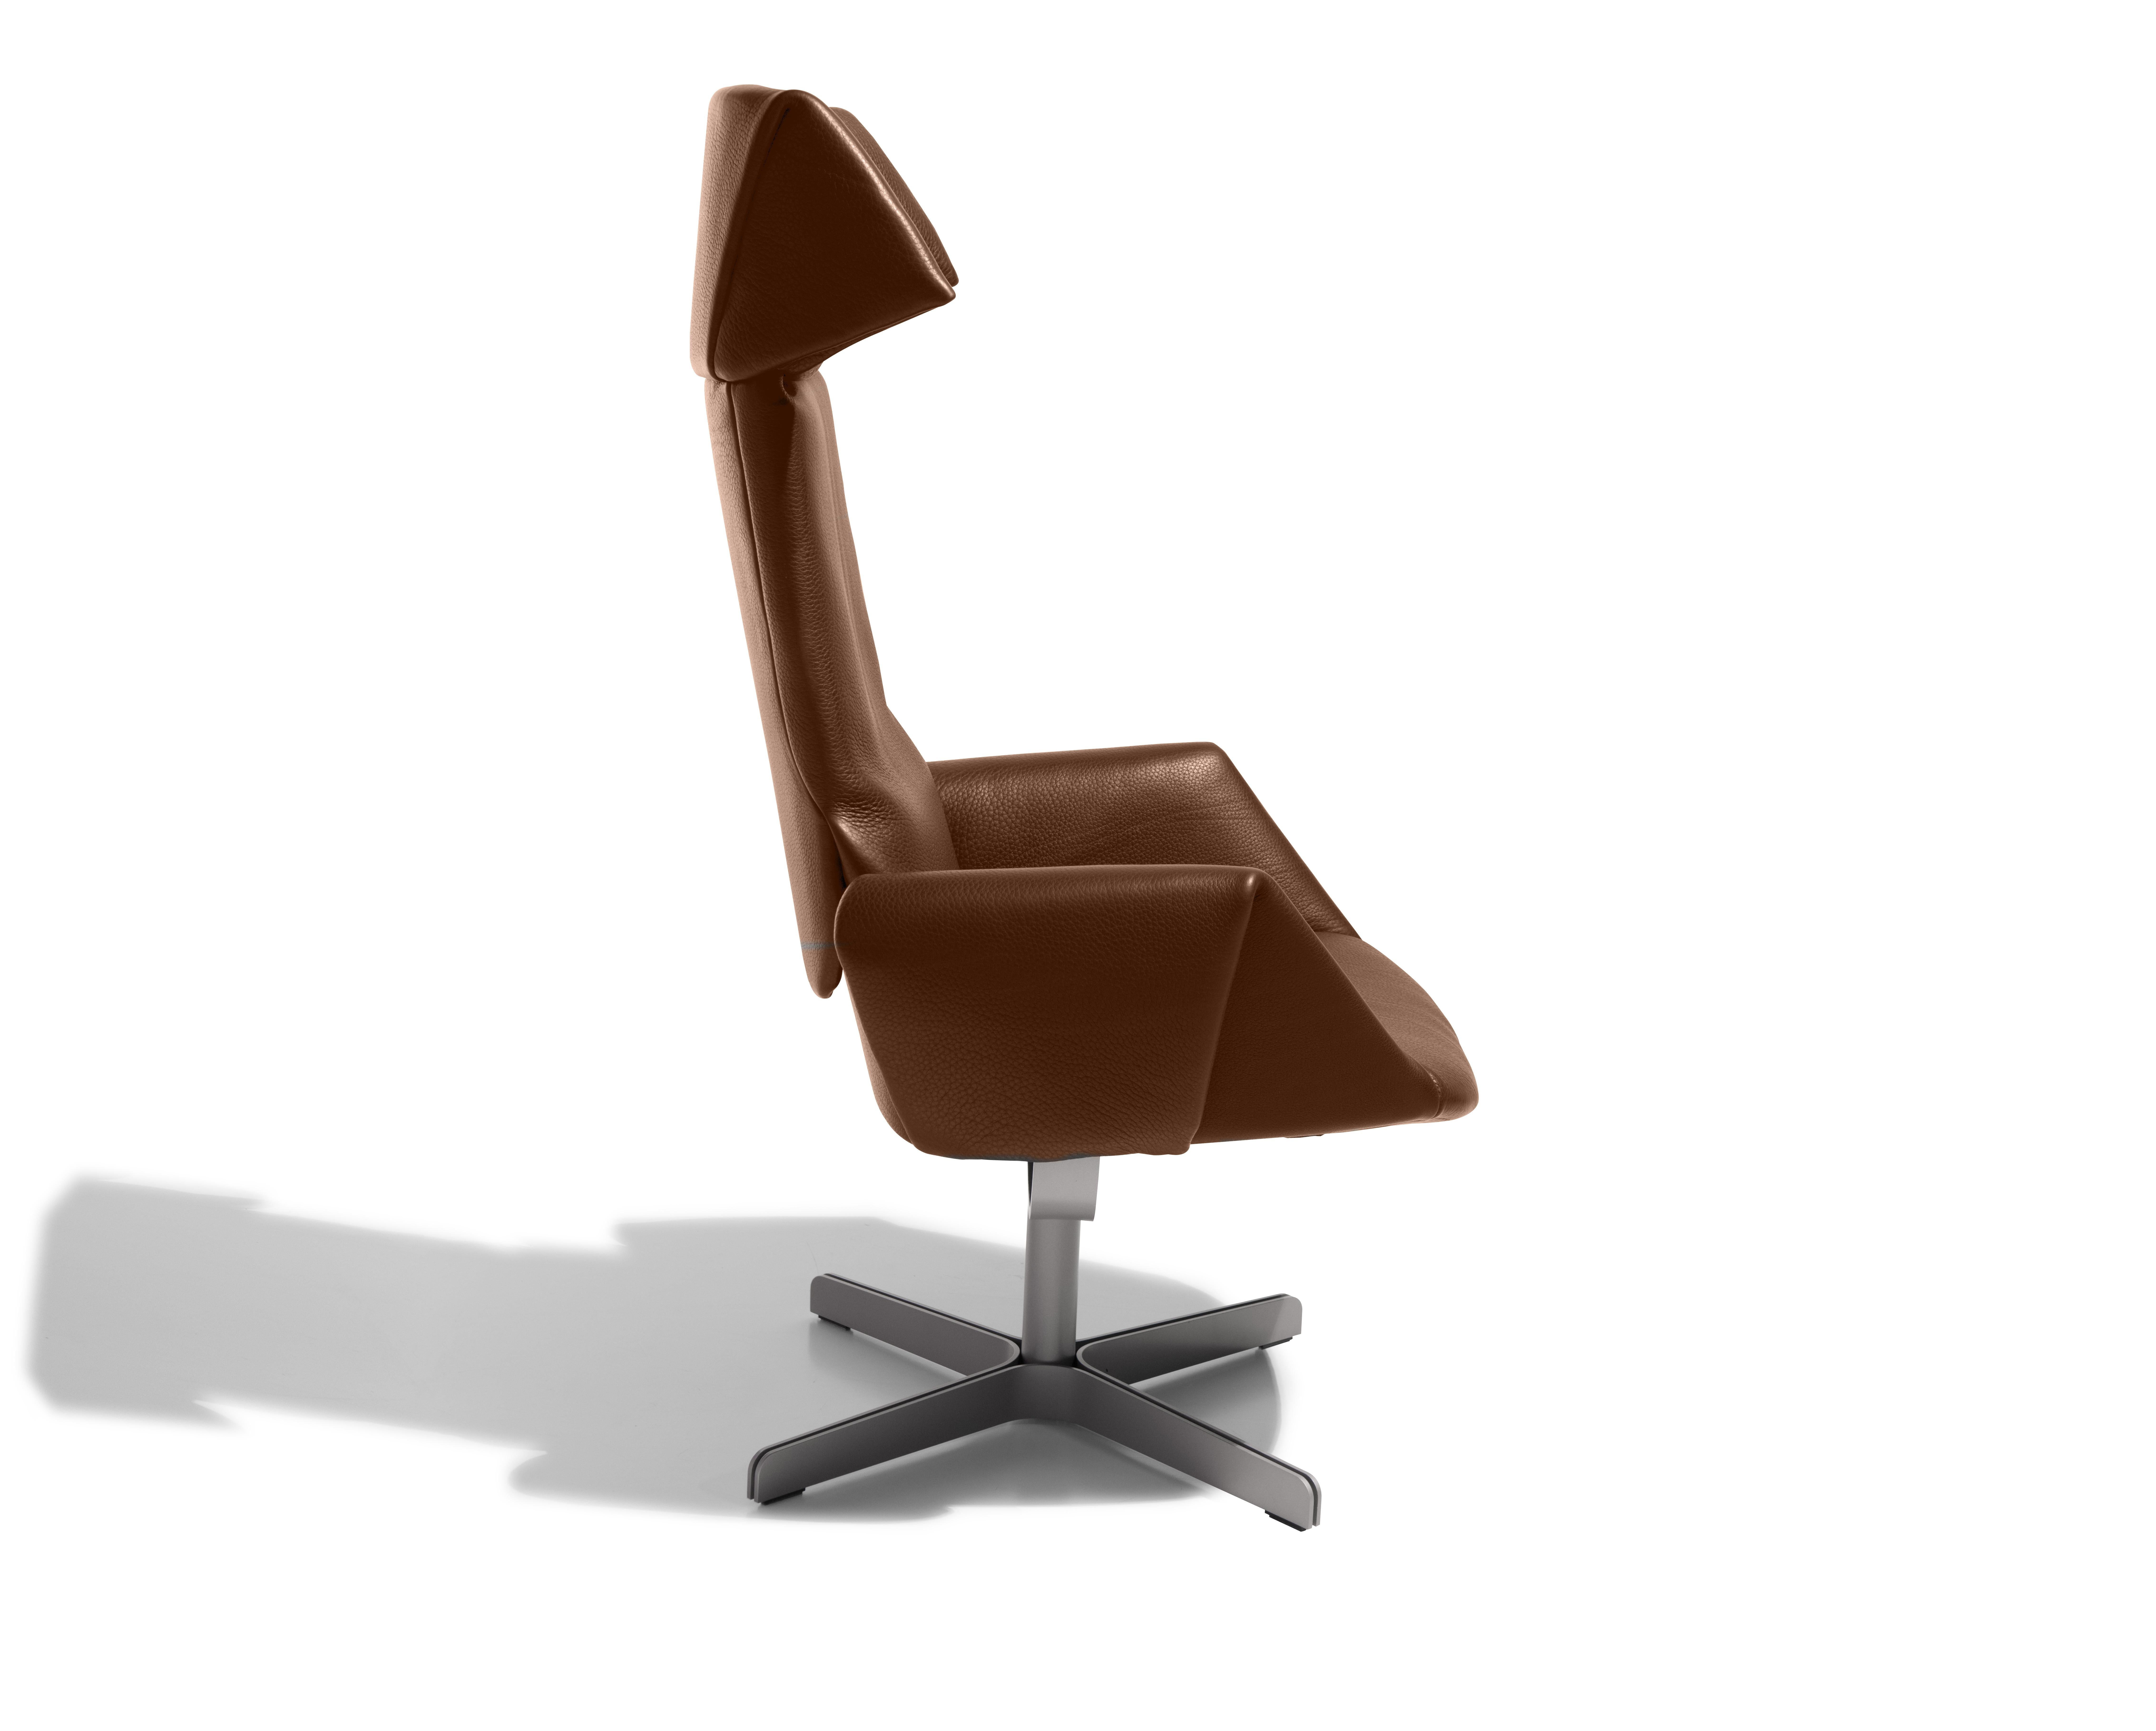 Revolutionäres Sitzkonzept

DS-343 ist ein Sessel, der sich bewegt, wenn sich die sitzende Person bewegt - denn das Objekt ist nicht mit einer klassischen Sitzfläche konstruiert, die an der Rückenlehne endet, sondern mit einer, die bis zur Höhe des